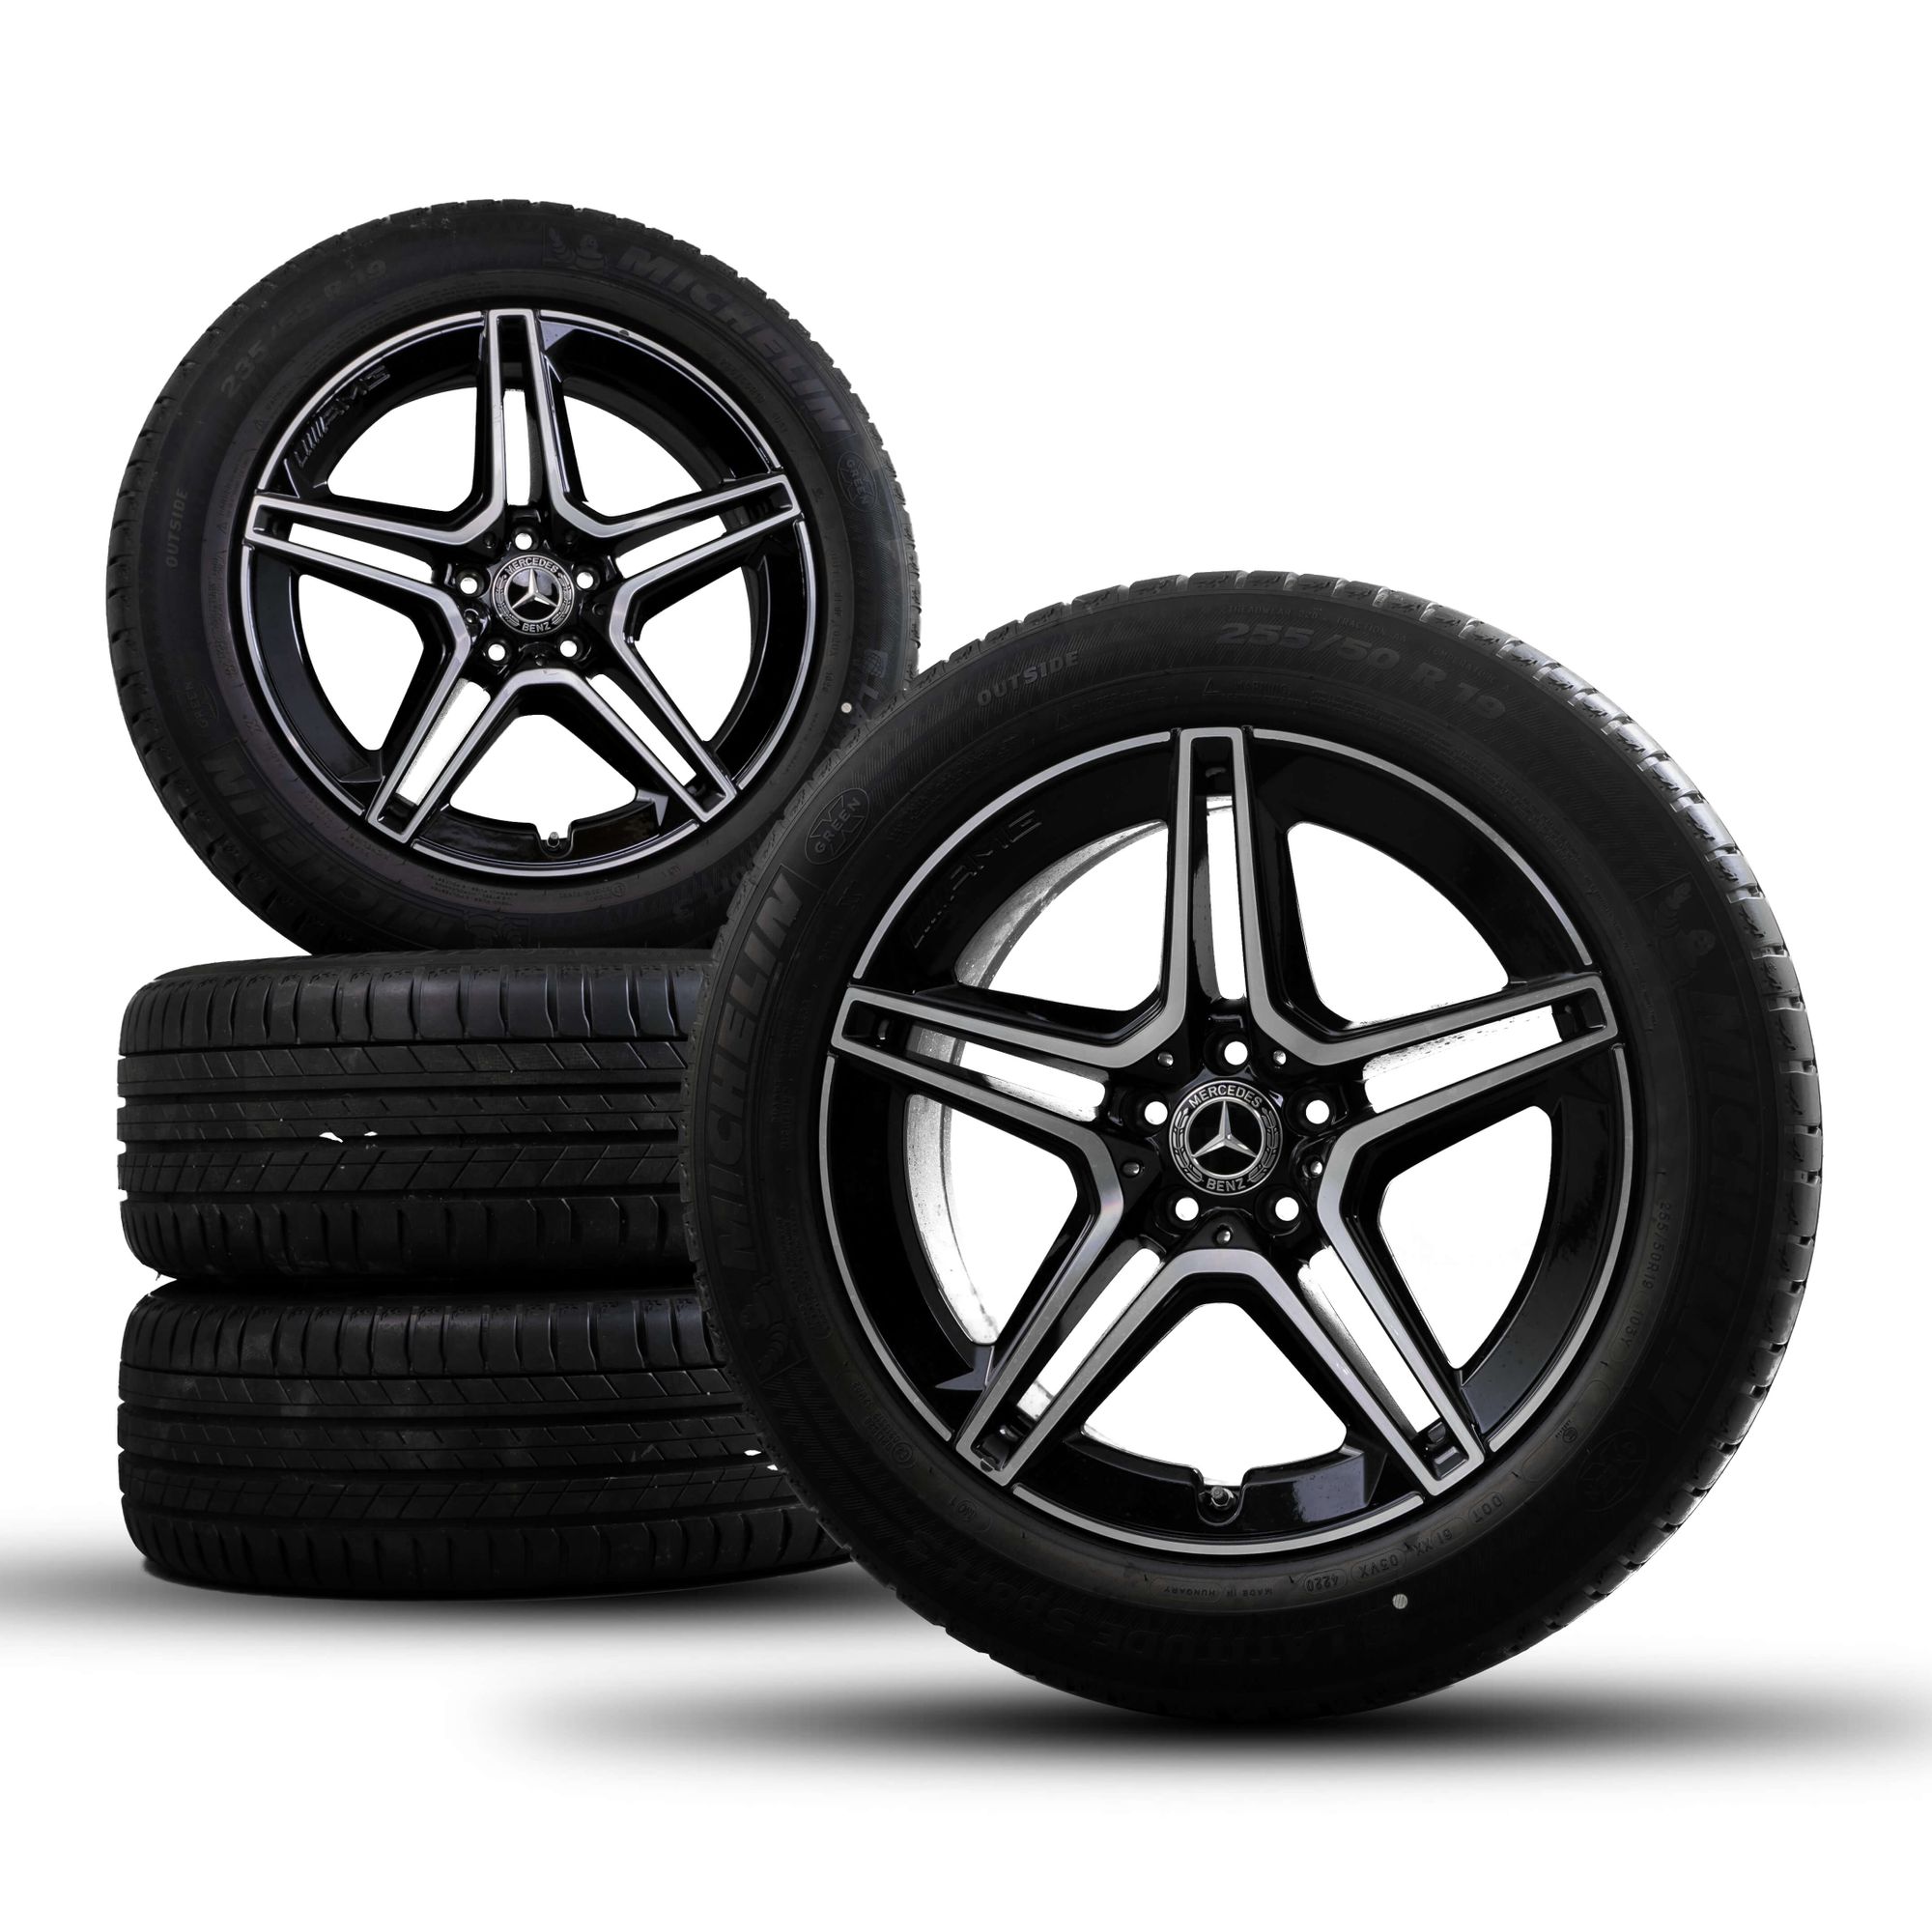 Neumáticos para nuestro coche.